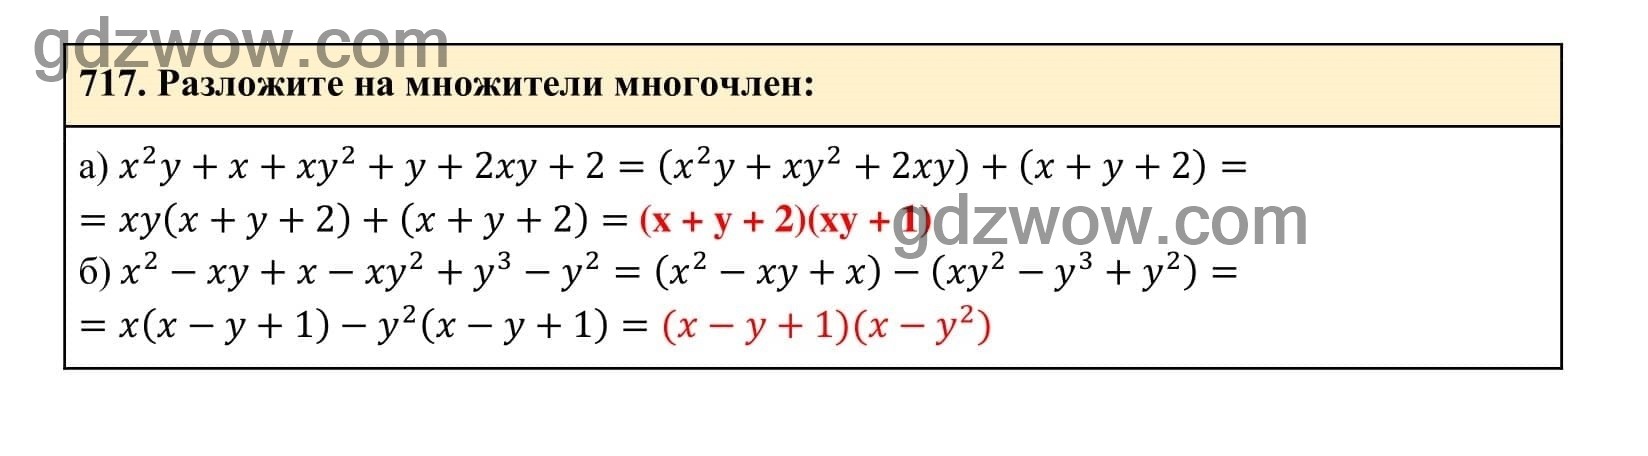 Упражнение 717 - ГДЗ по Алгебре 7 класс Учебник Макарычев (решебник) - GDZwow